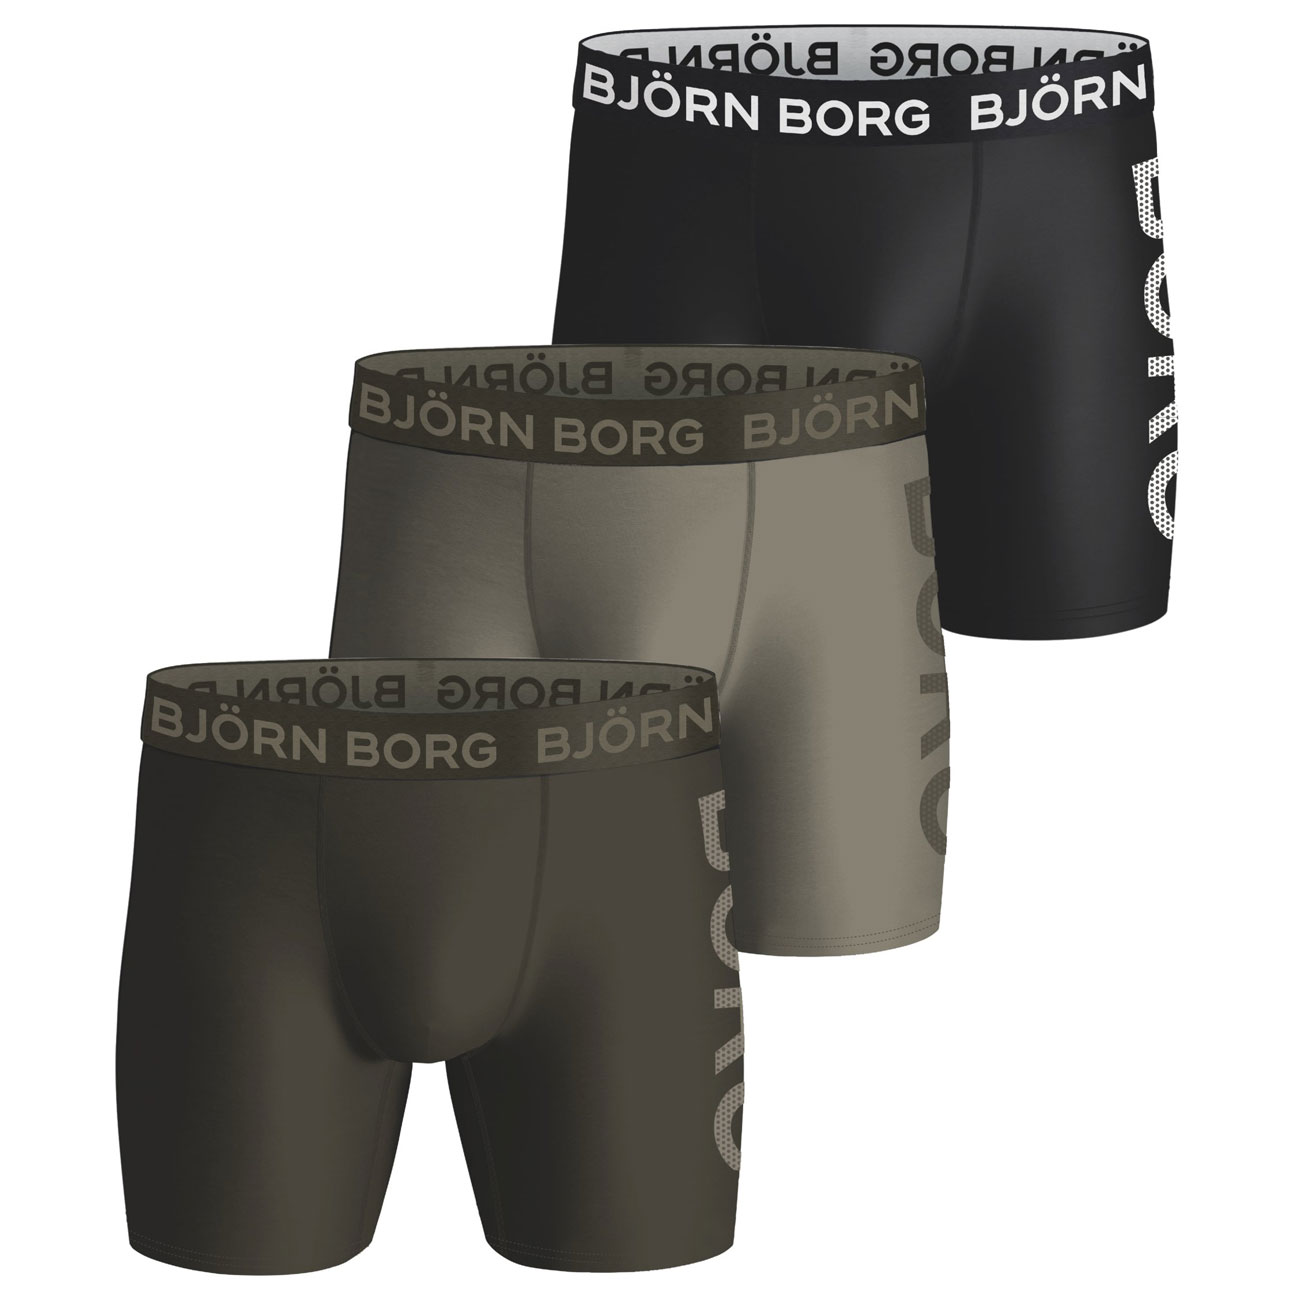 Bjorn Borg Boxershort Performance 3-pack khaki